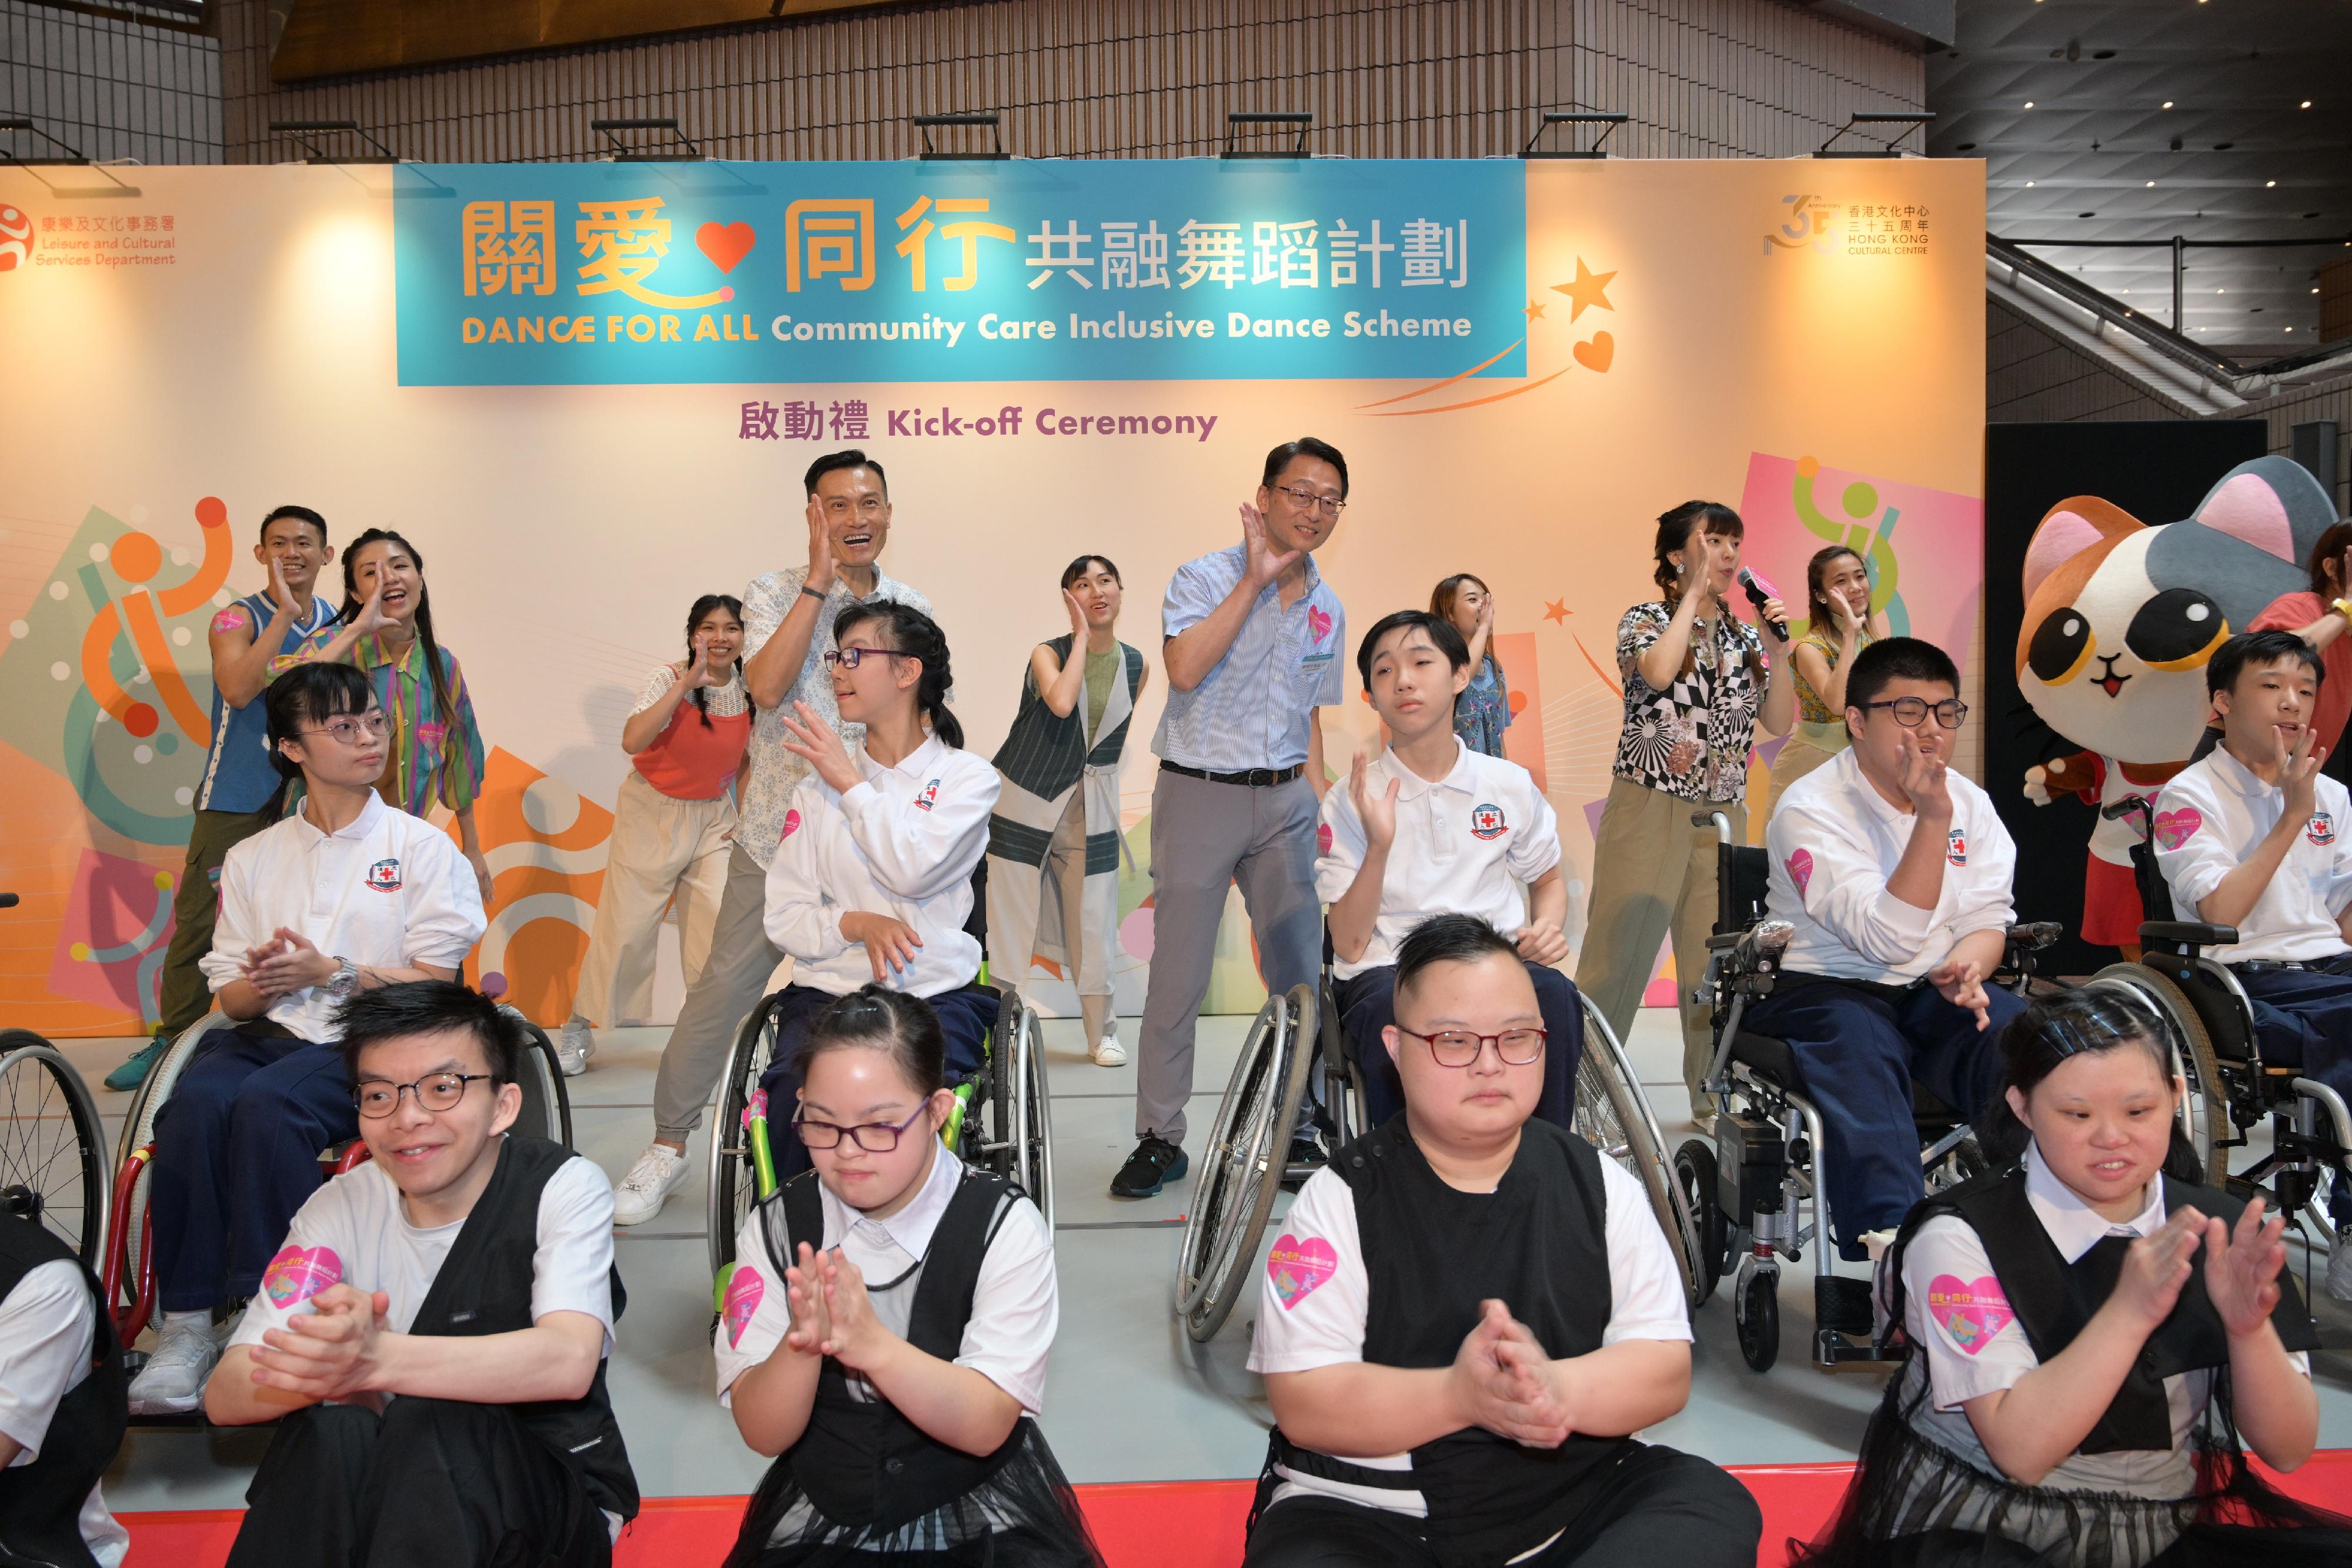 康乐及文化事务署推出的「关爱．同行共融舞蹈计划」今日（五月五日）启动。计划为期十五个月，以香港文化中心为基地，让不同能力的人士一起跳舞，推动社会共融。图示启动礼主礼嘉宾与演出者共舞。
